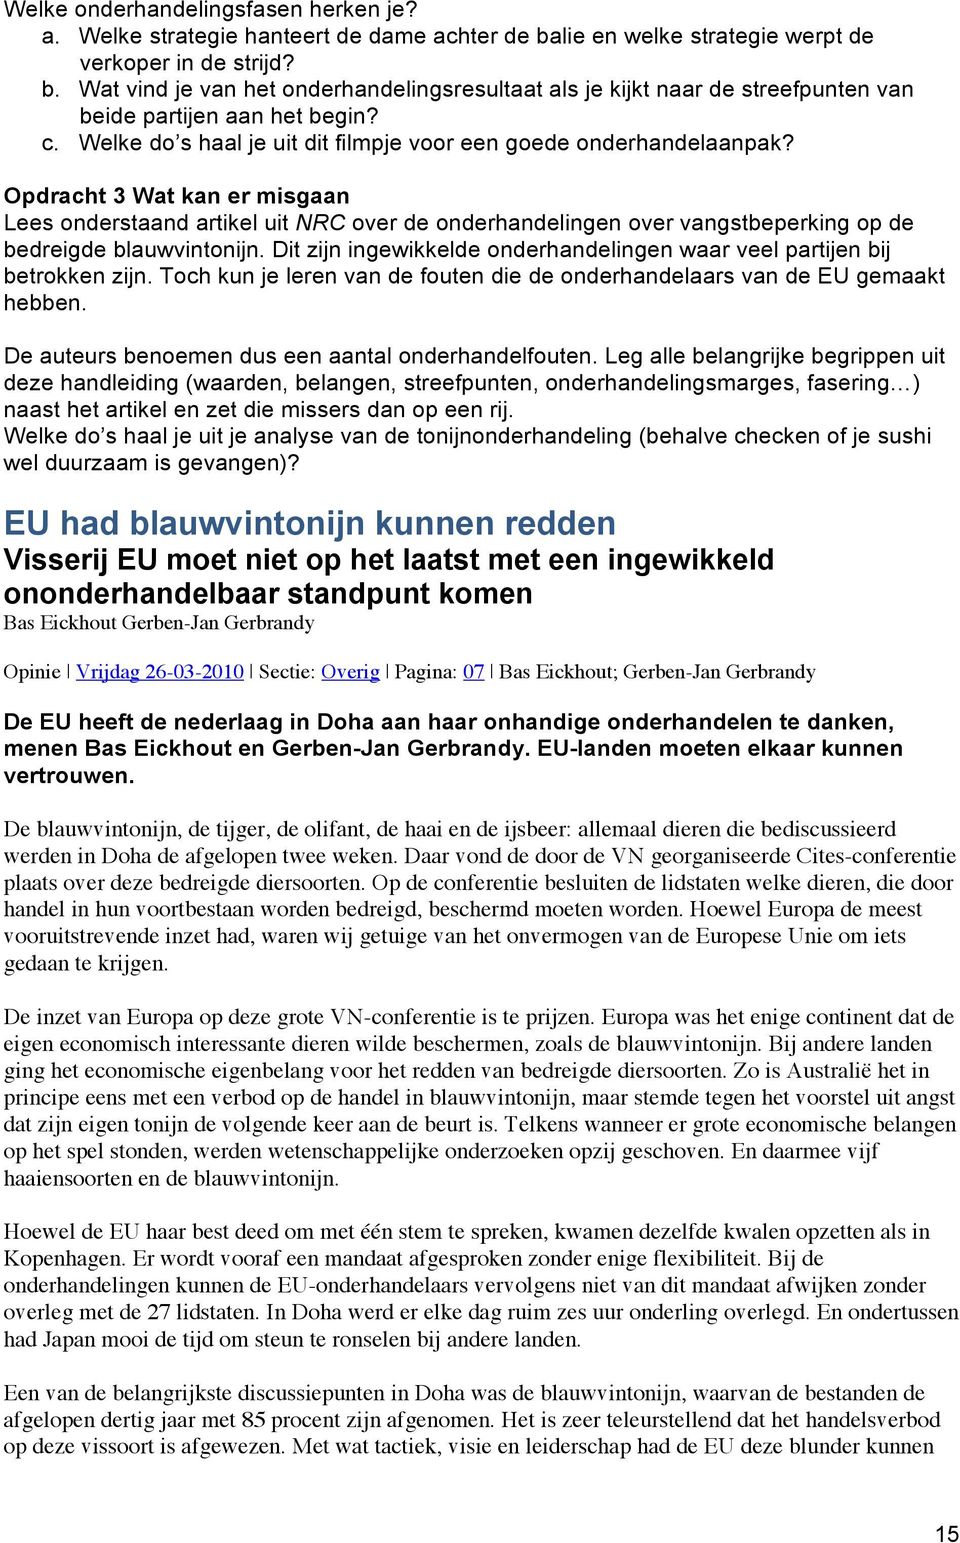 Opdracht 3 Wat kan er misgaan Lees onderstaand artikel uit NRC over de onderhandelingen over vangstbeperking op de bedreigde blauwvintonijn.